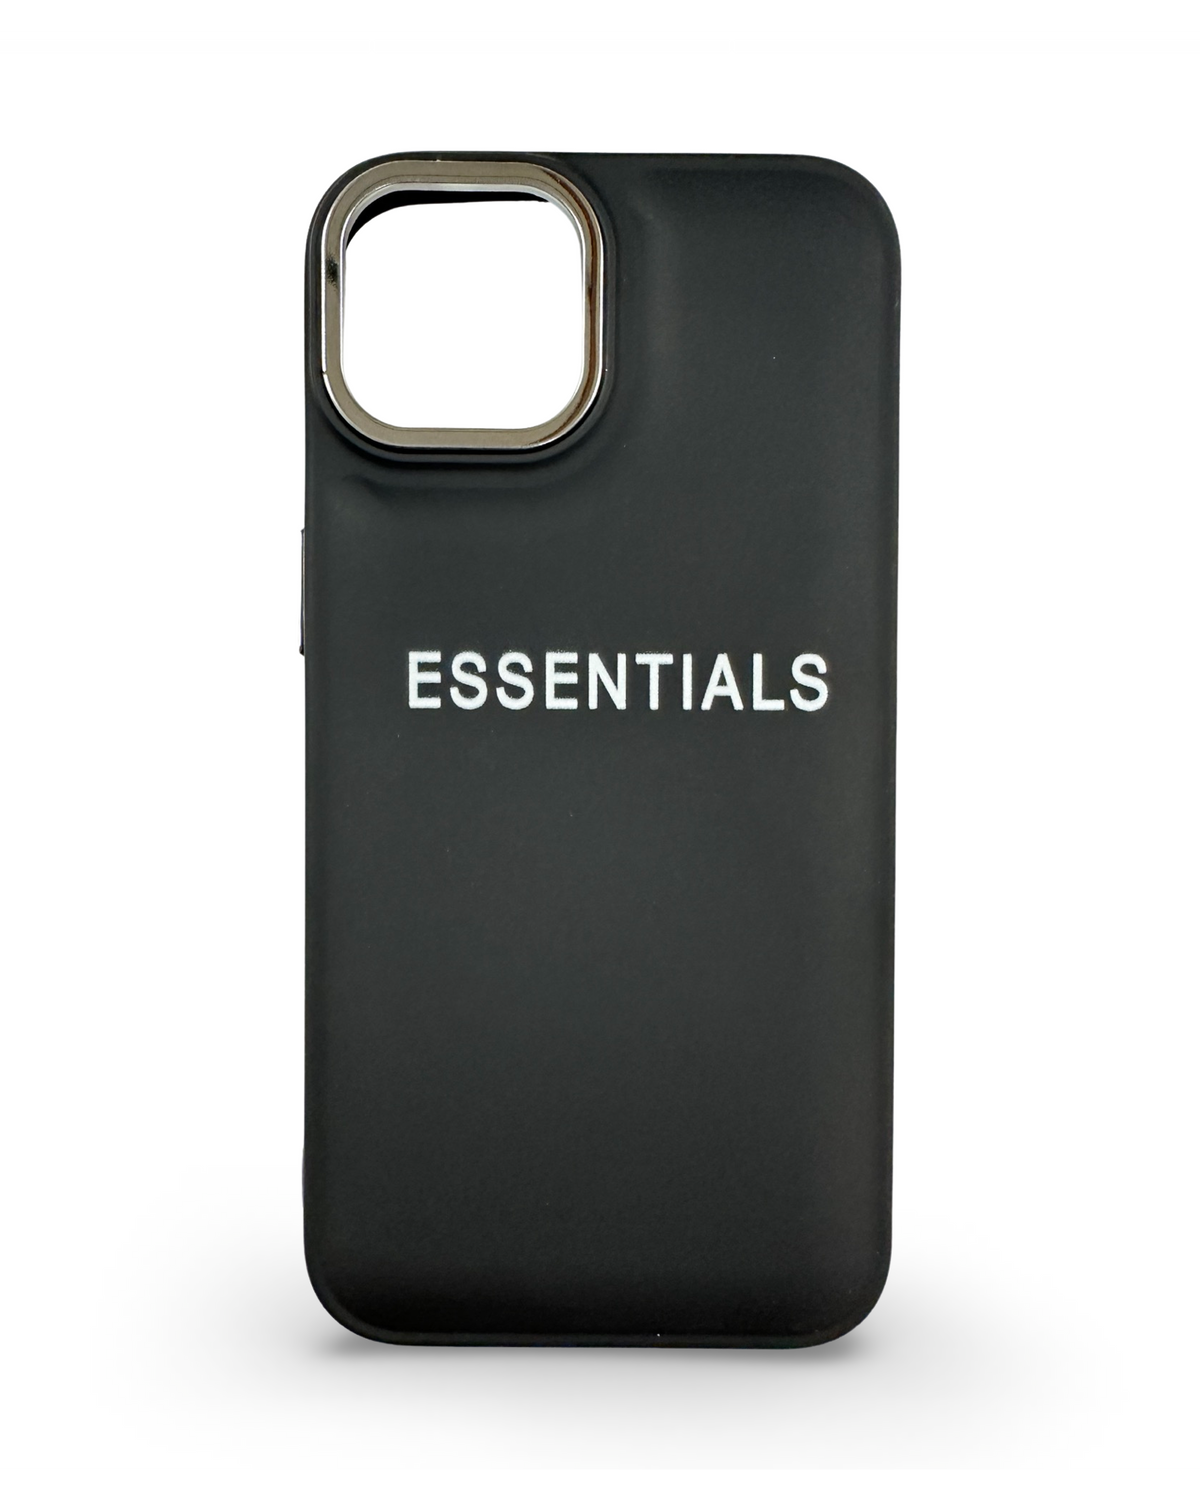 CaseNerd "Essential Black" iPhone Case